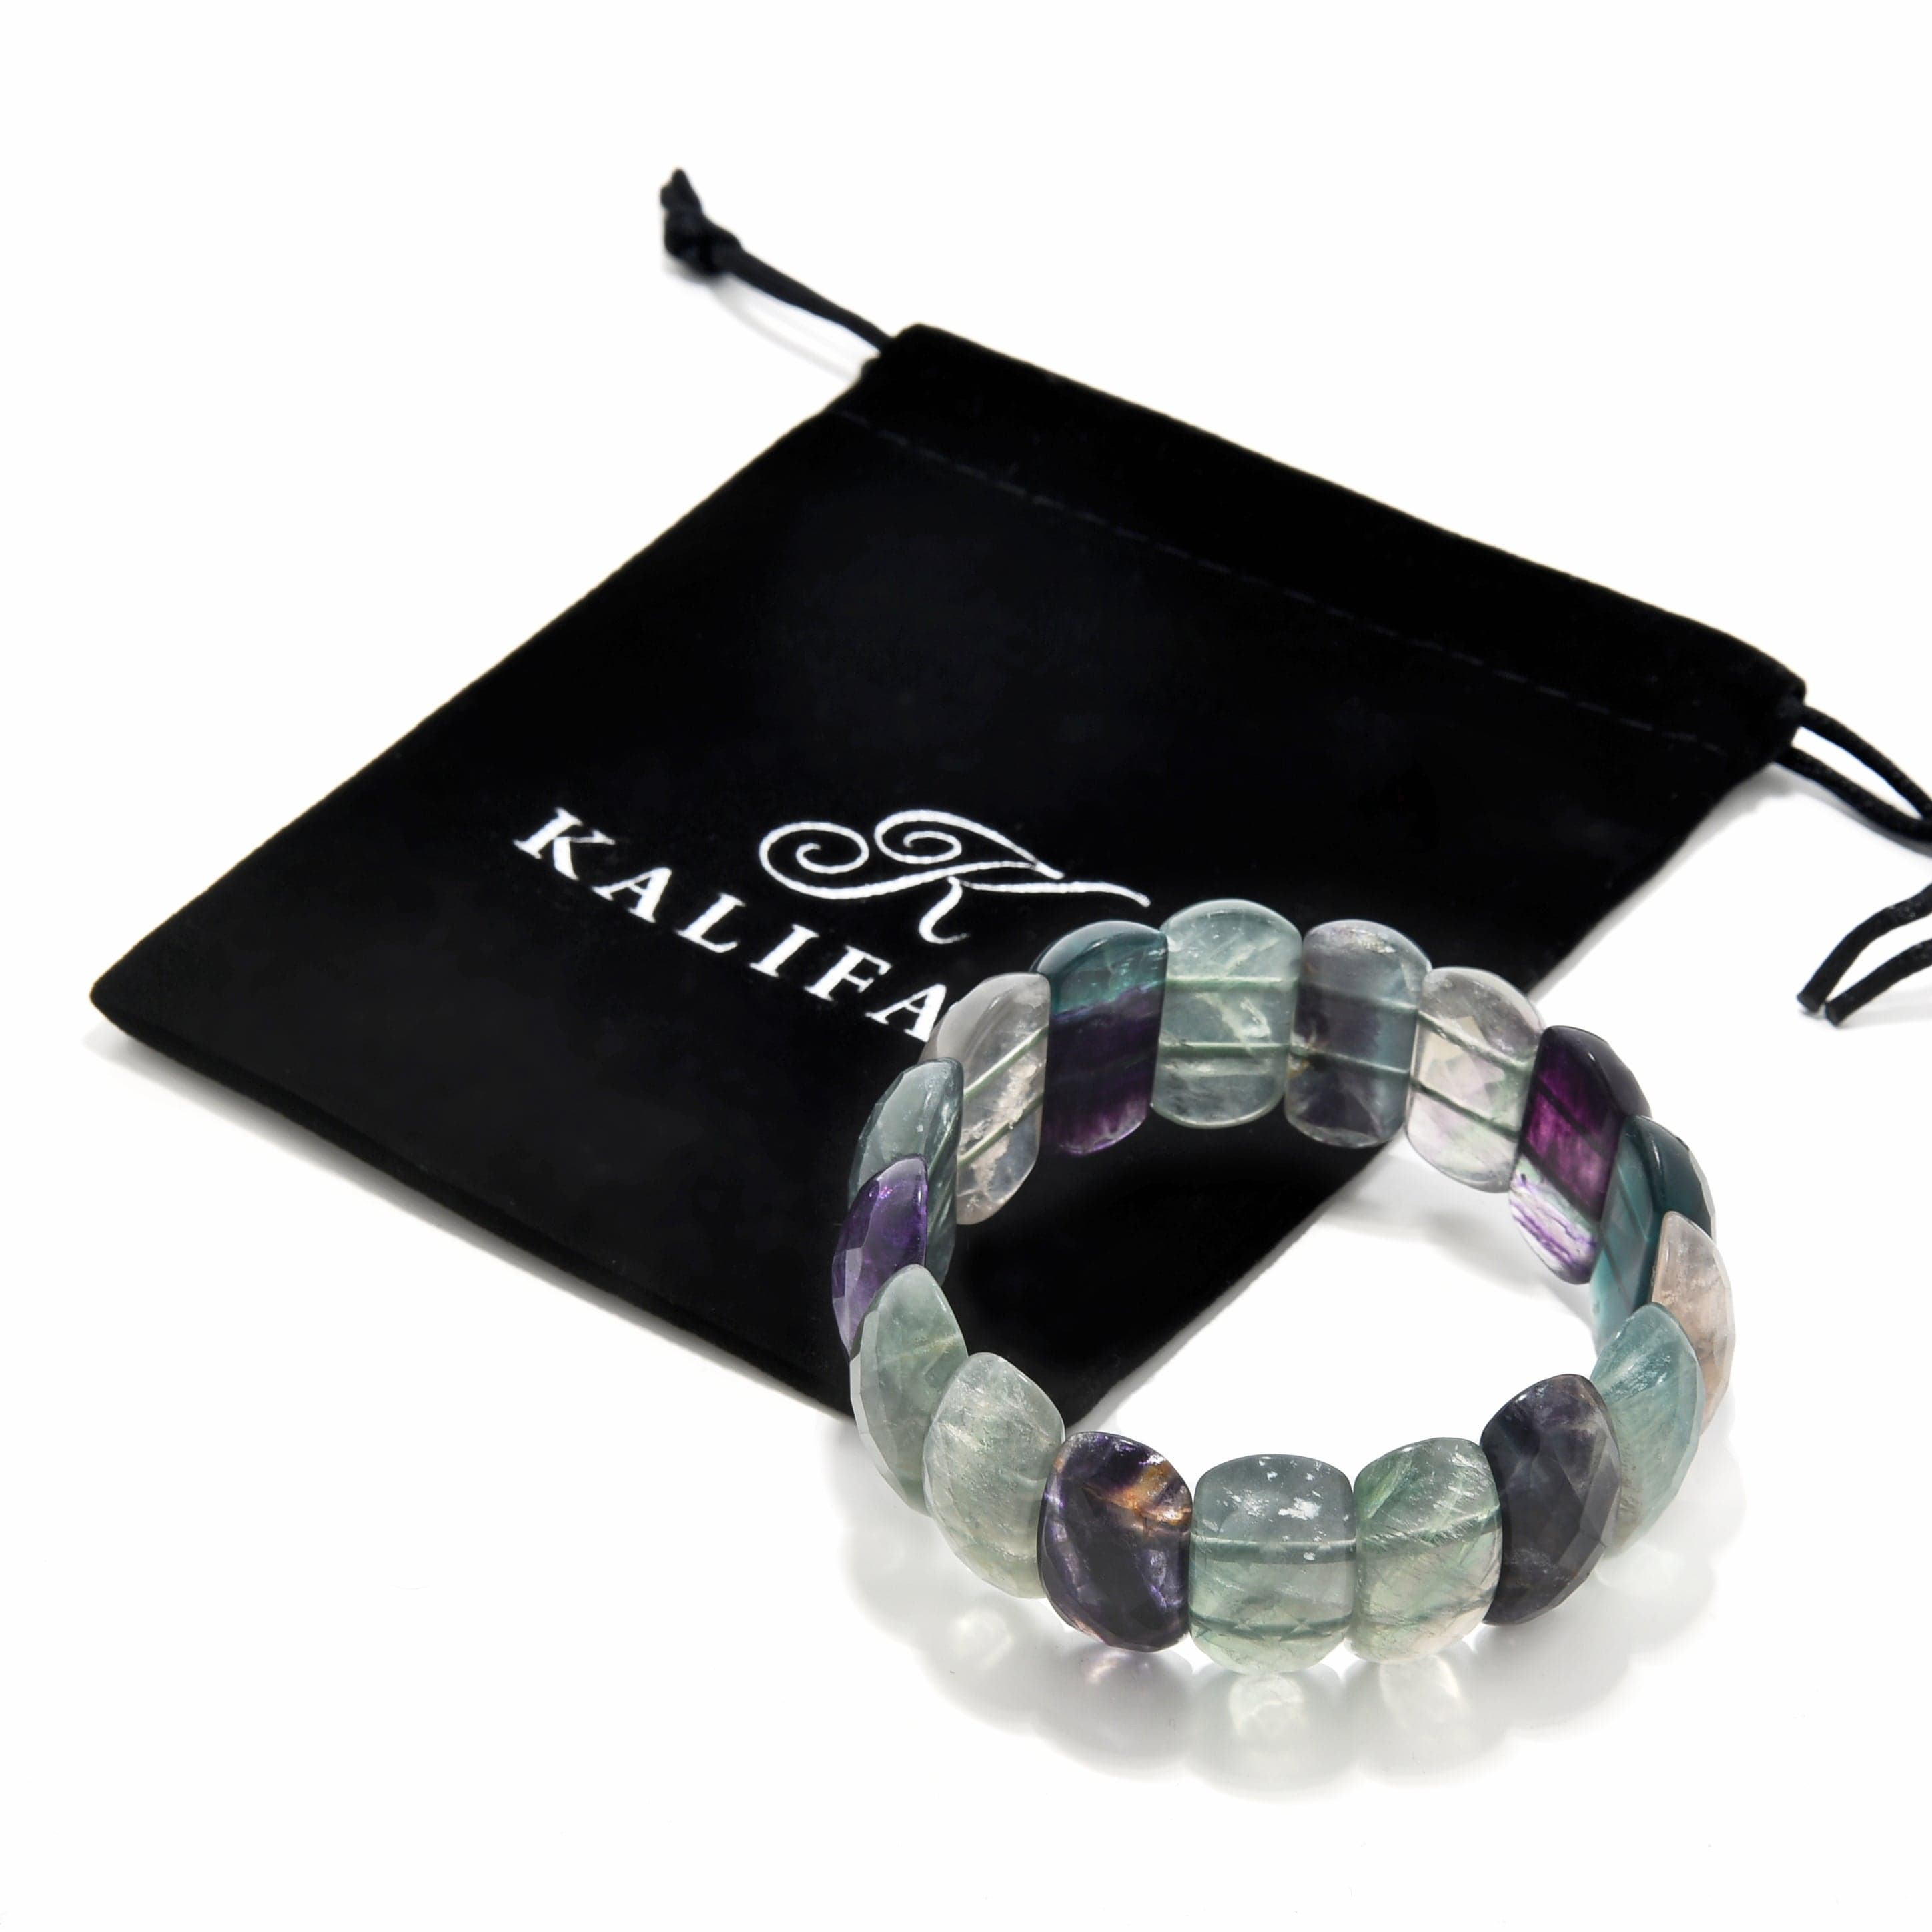 Kalifano Gemstone Bracelets Fluorite Faceted Gemstone Bead Elastic Bracelet